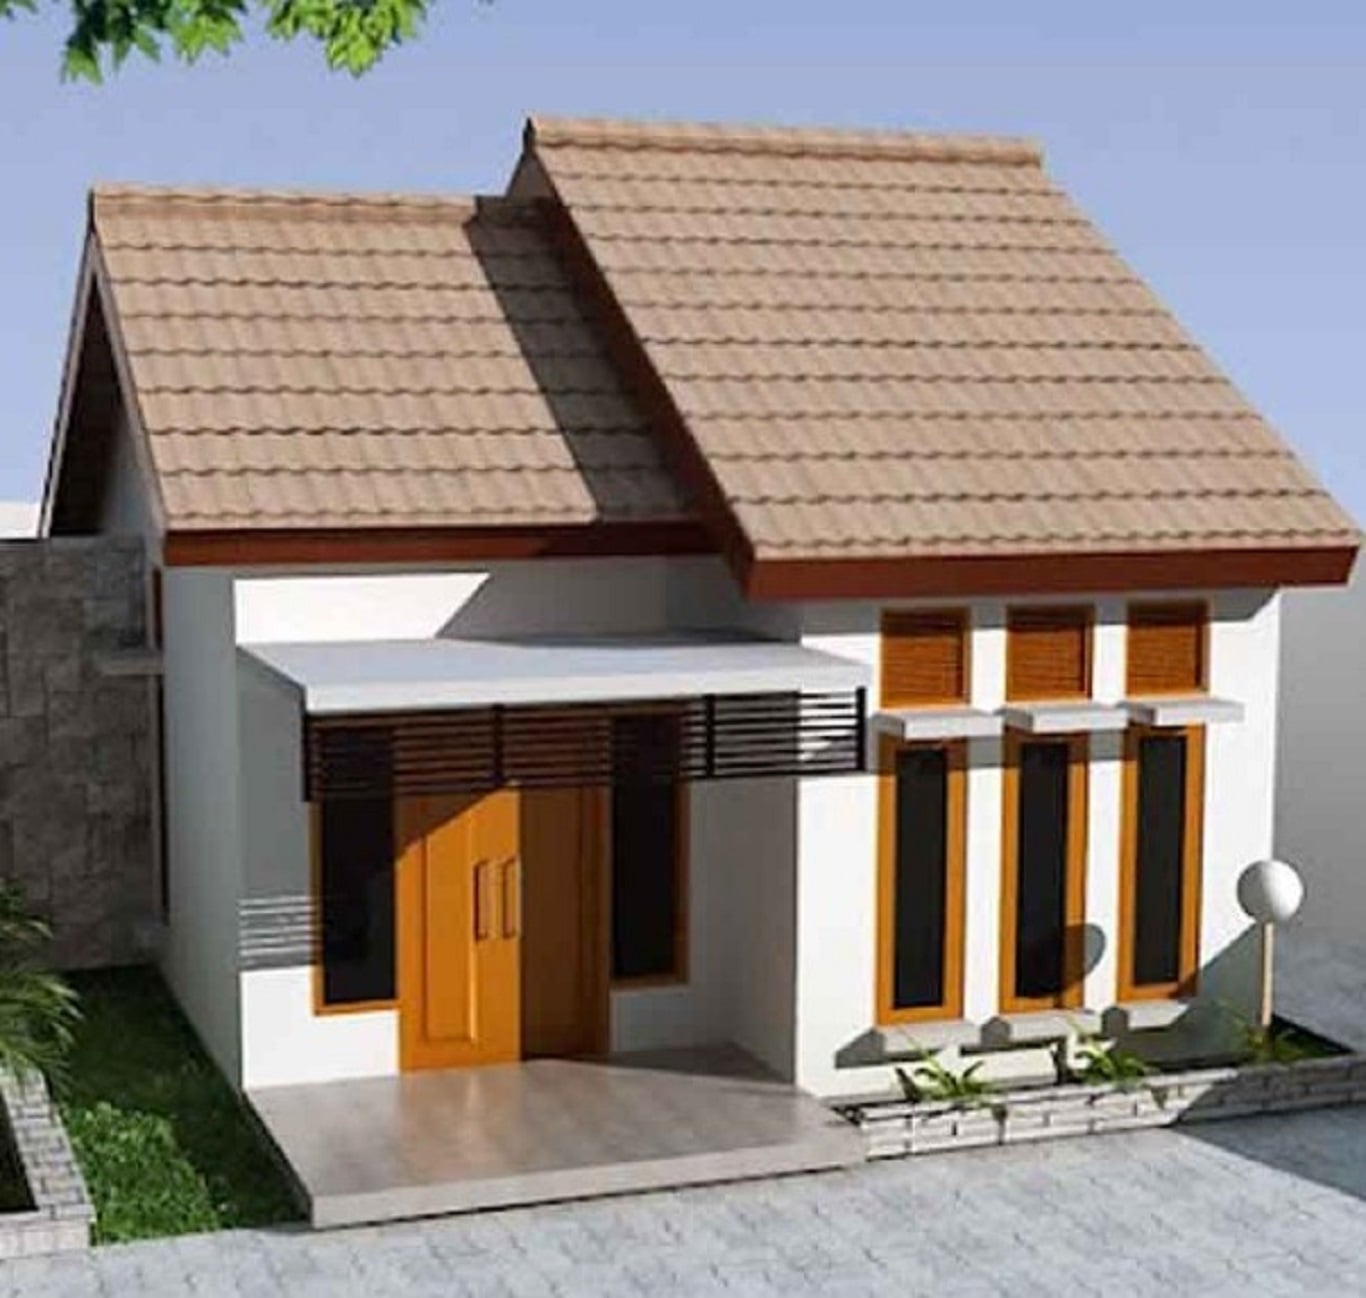 71 Arsitektur Desain Model Rumah Klasik Sederhana Paling Terkenal